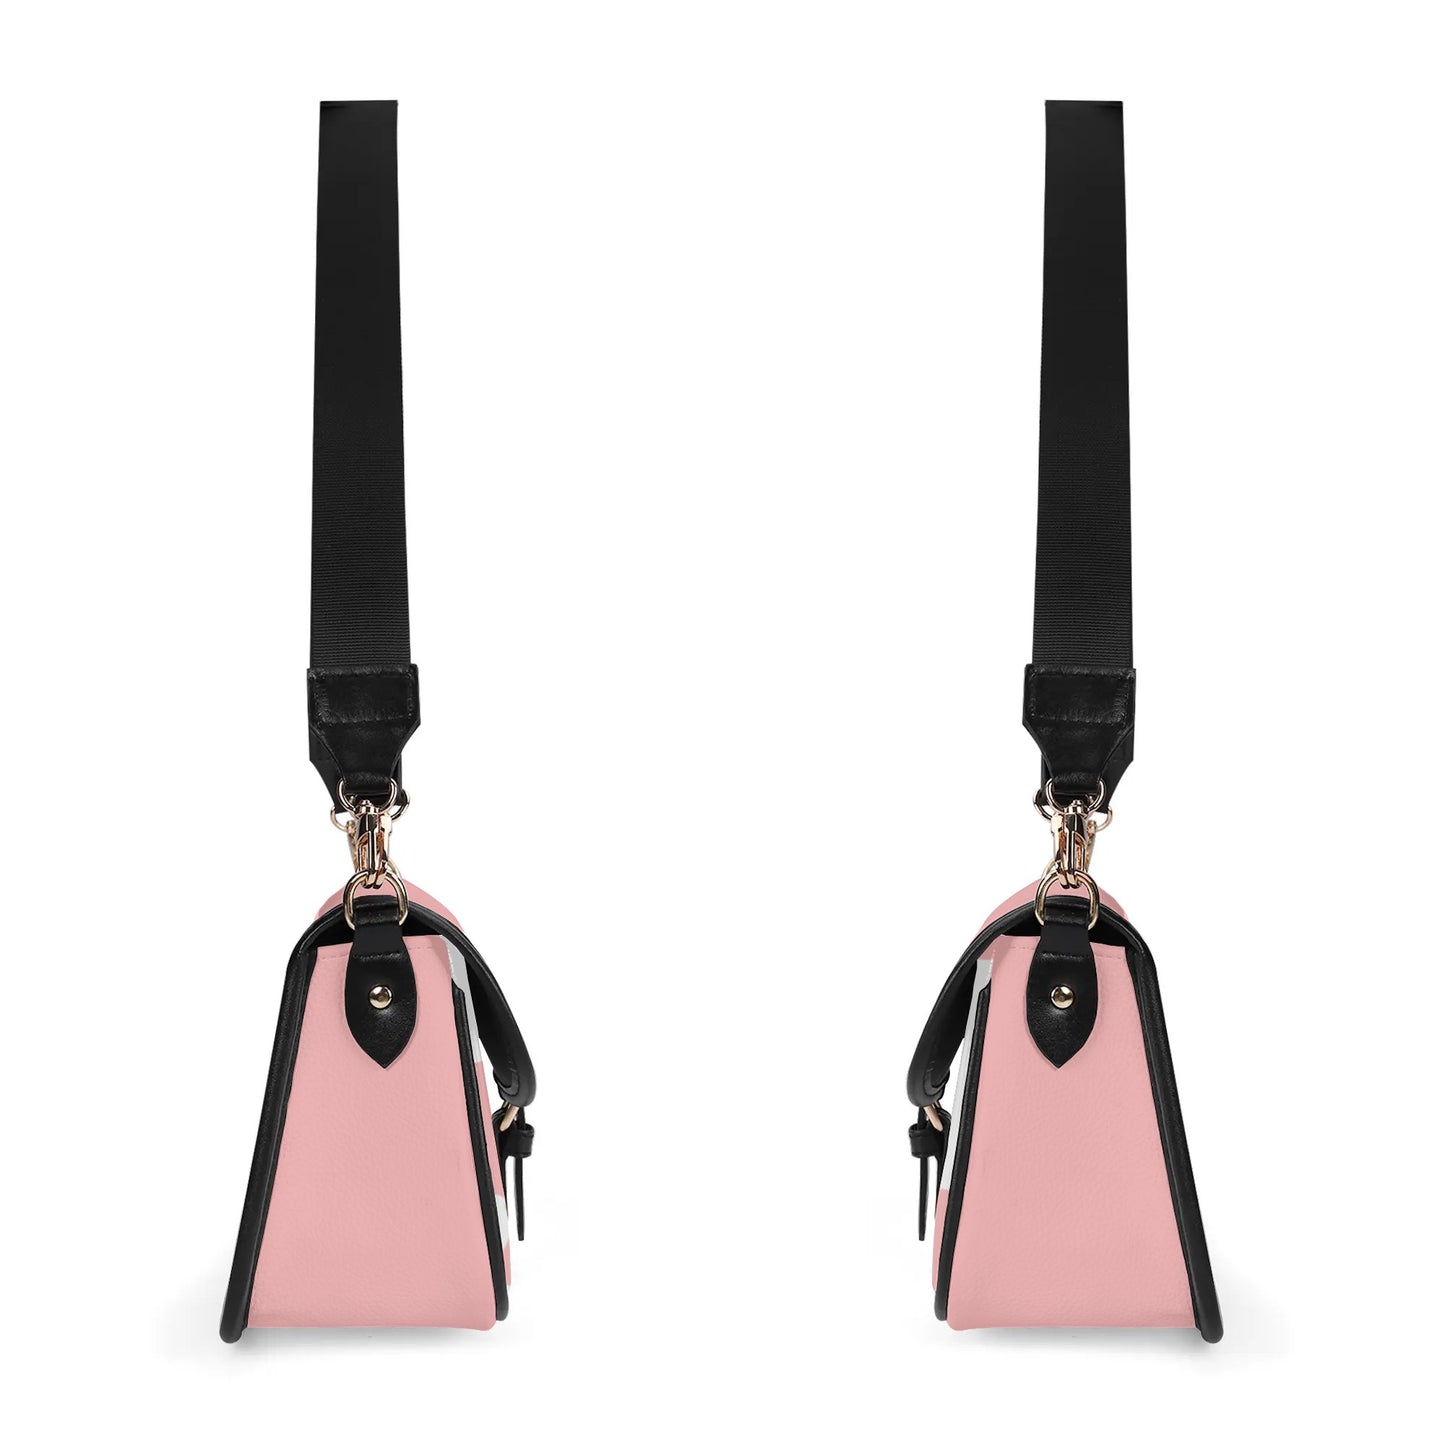 Pink & White Patterned Chain Shoulder Bag